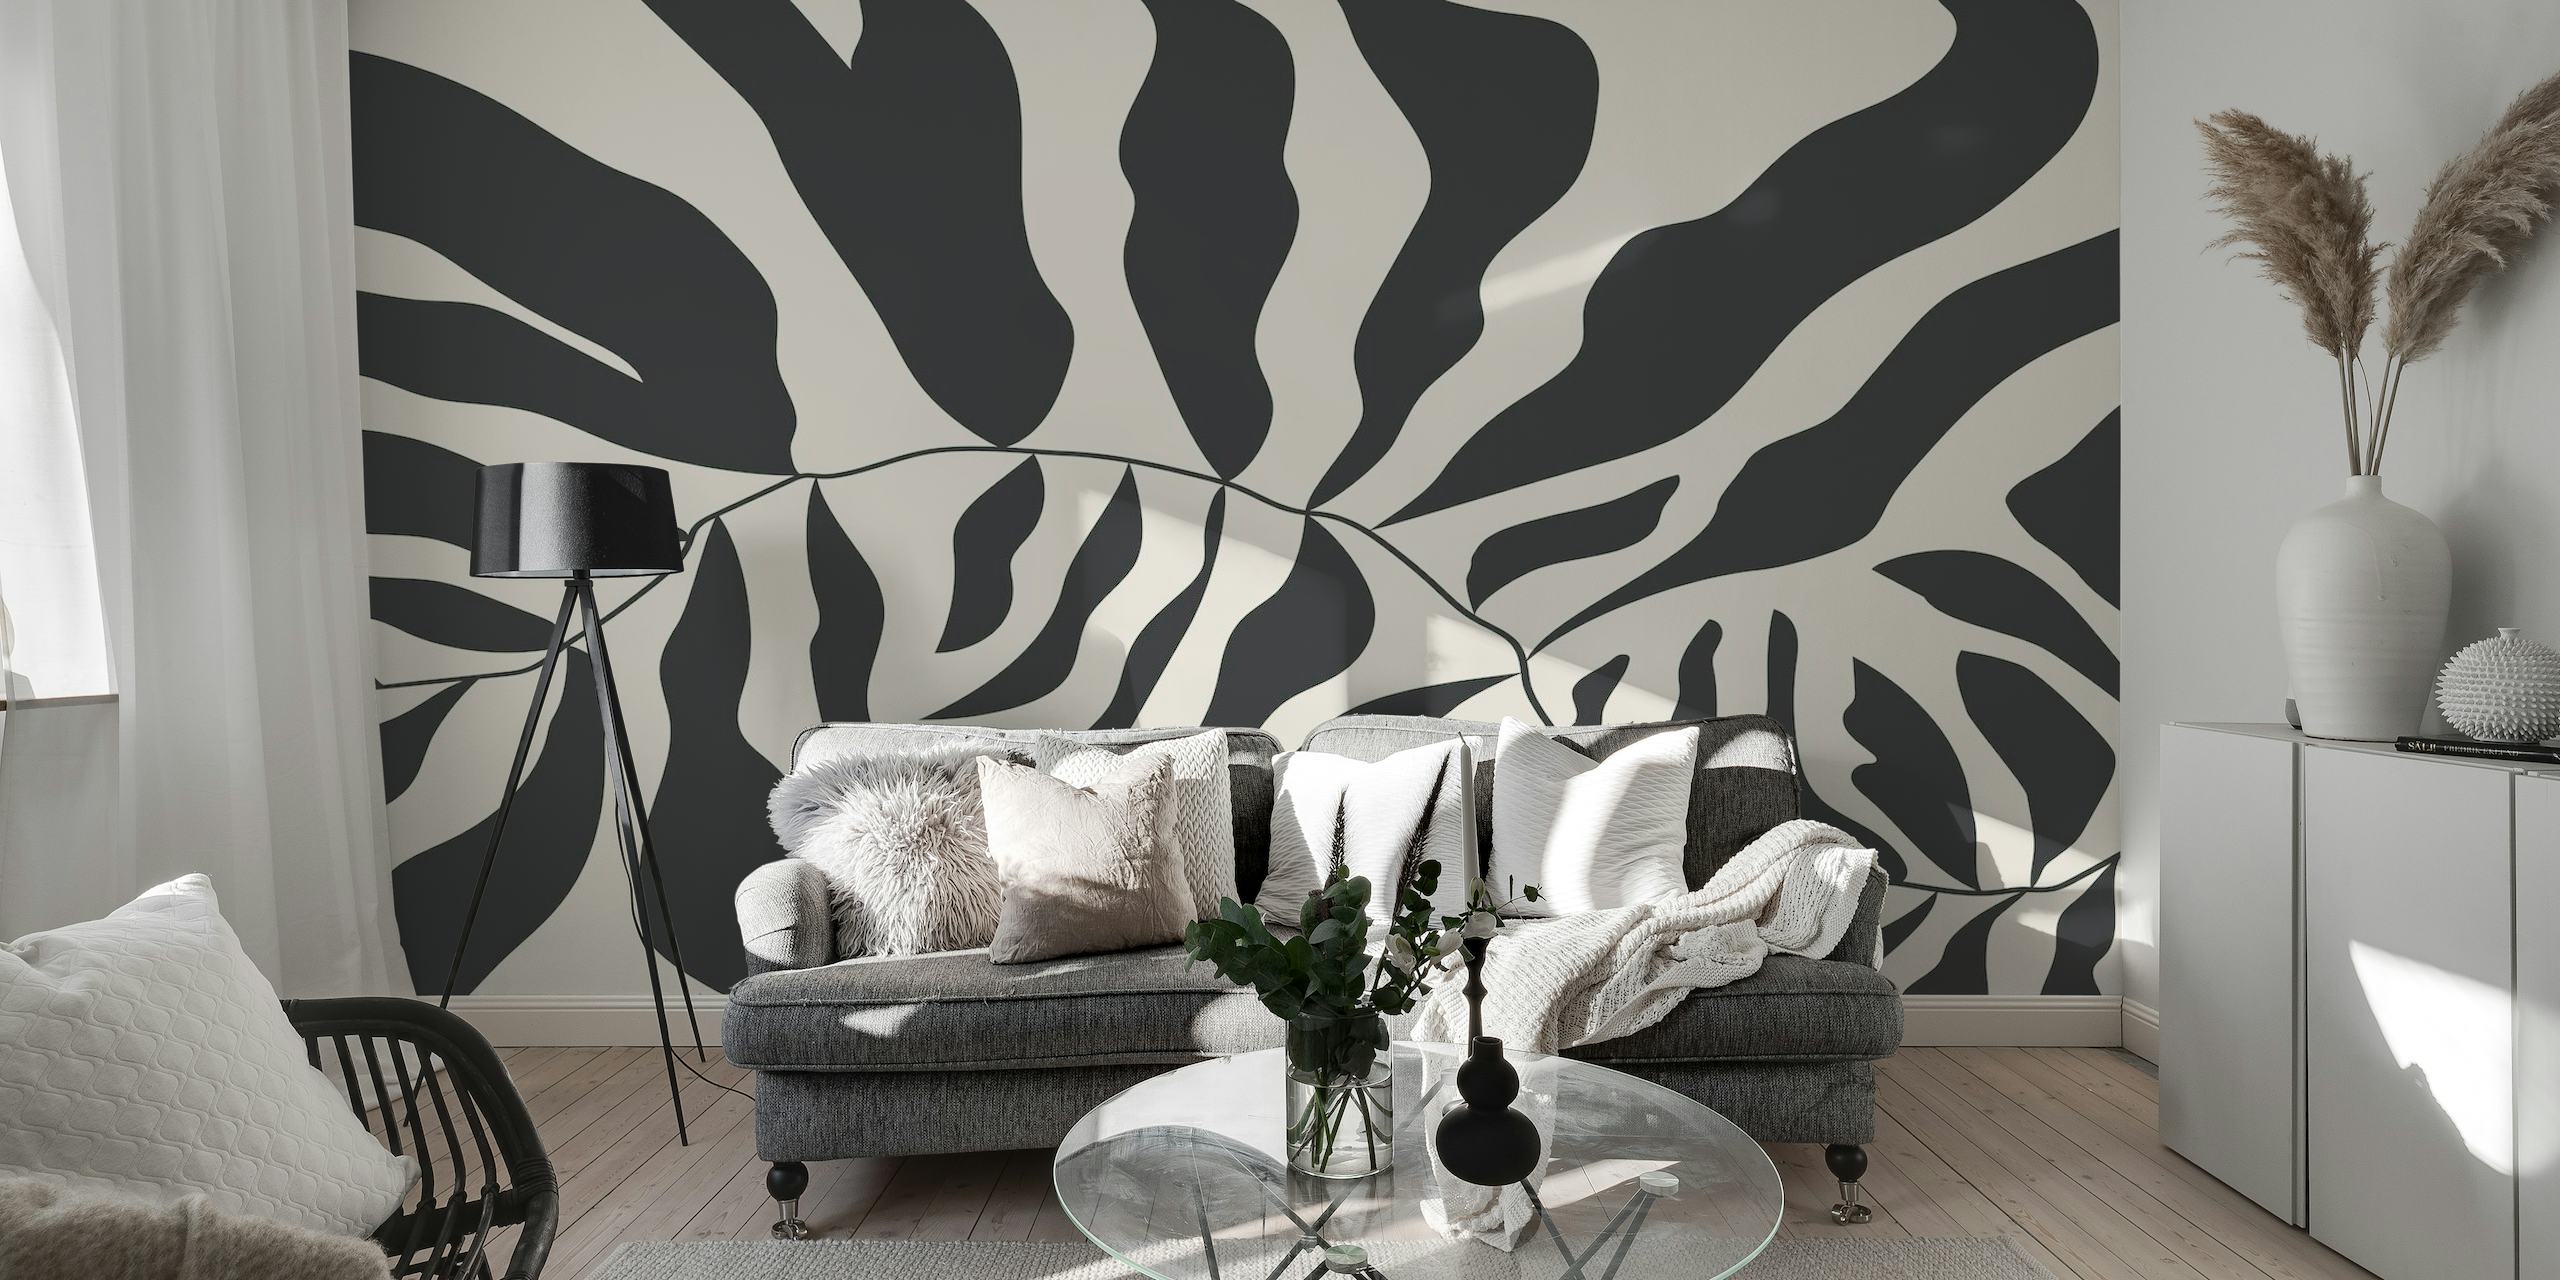 Sort/hvid abstrakt vægmaleri i Matisse-stil, der viser organiske former